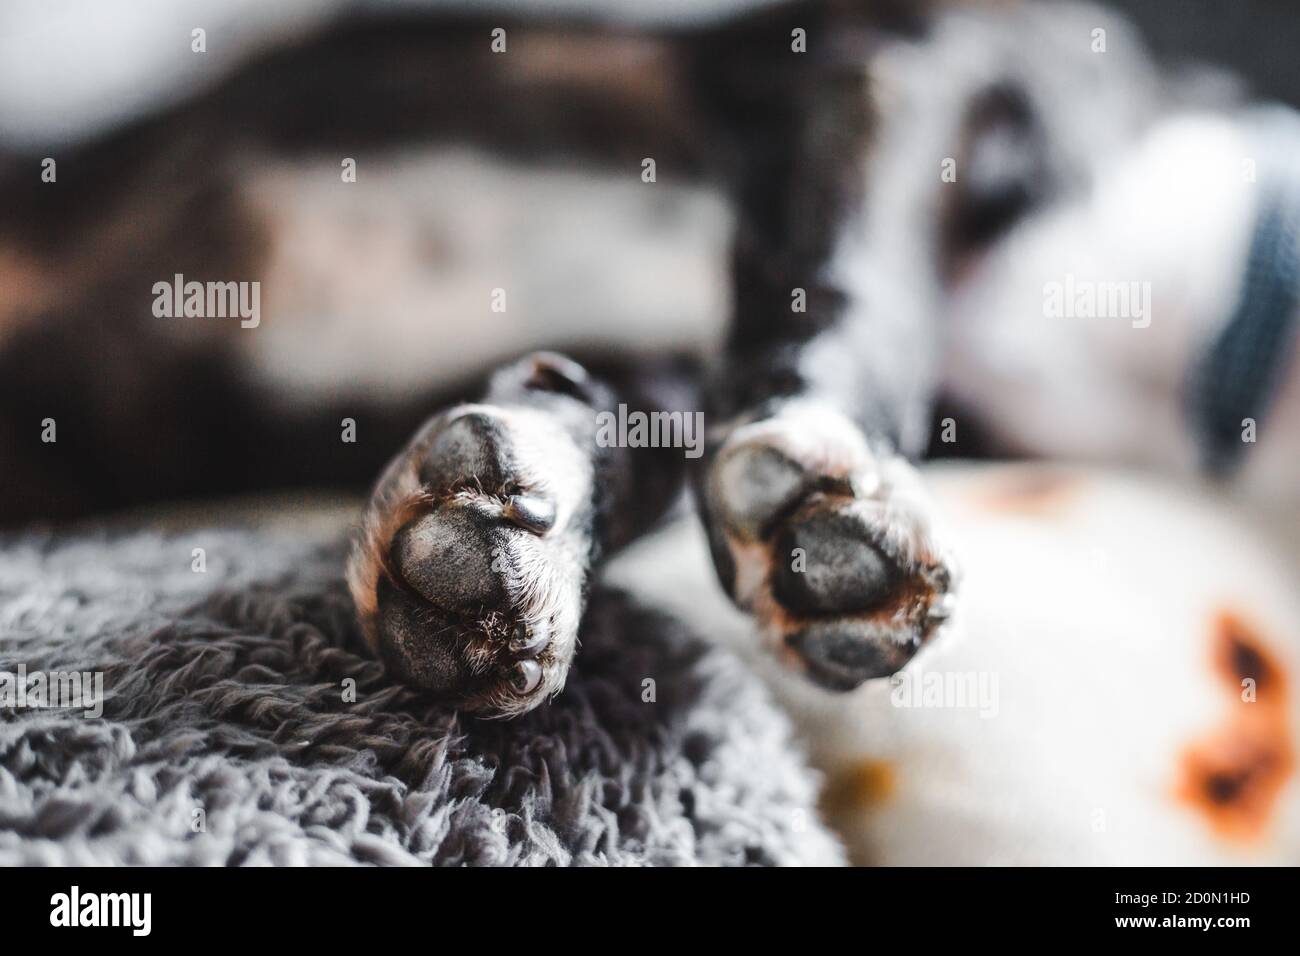 Gros plan du chien Bull terrier noir et blanc bringé Staffordshire les pattes, comme il dort, s'étirent sur le canapé Banque D'Images